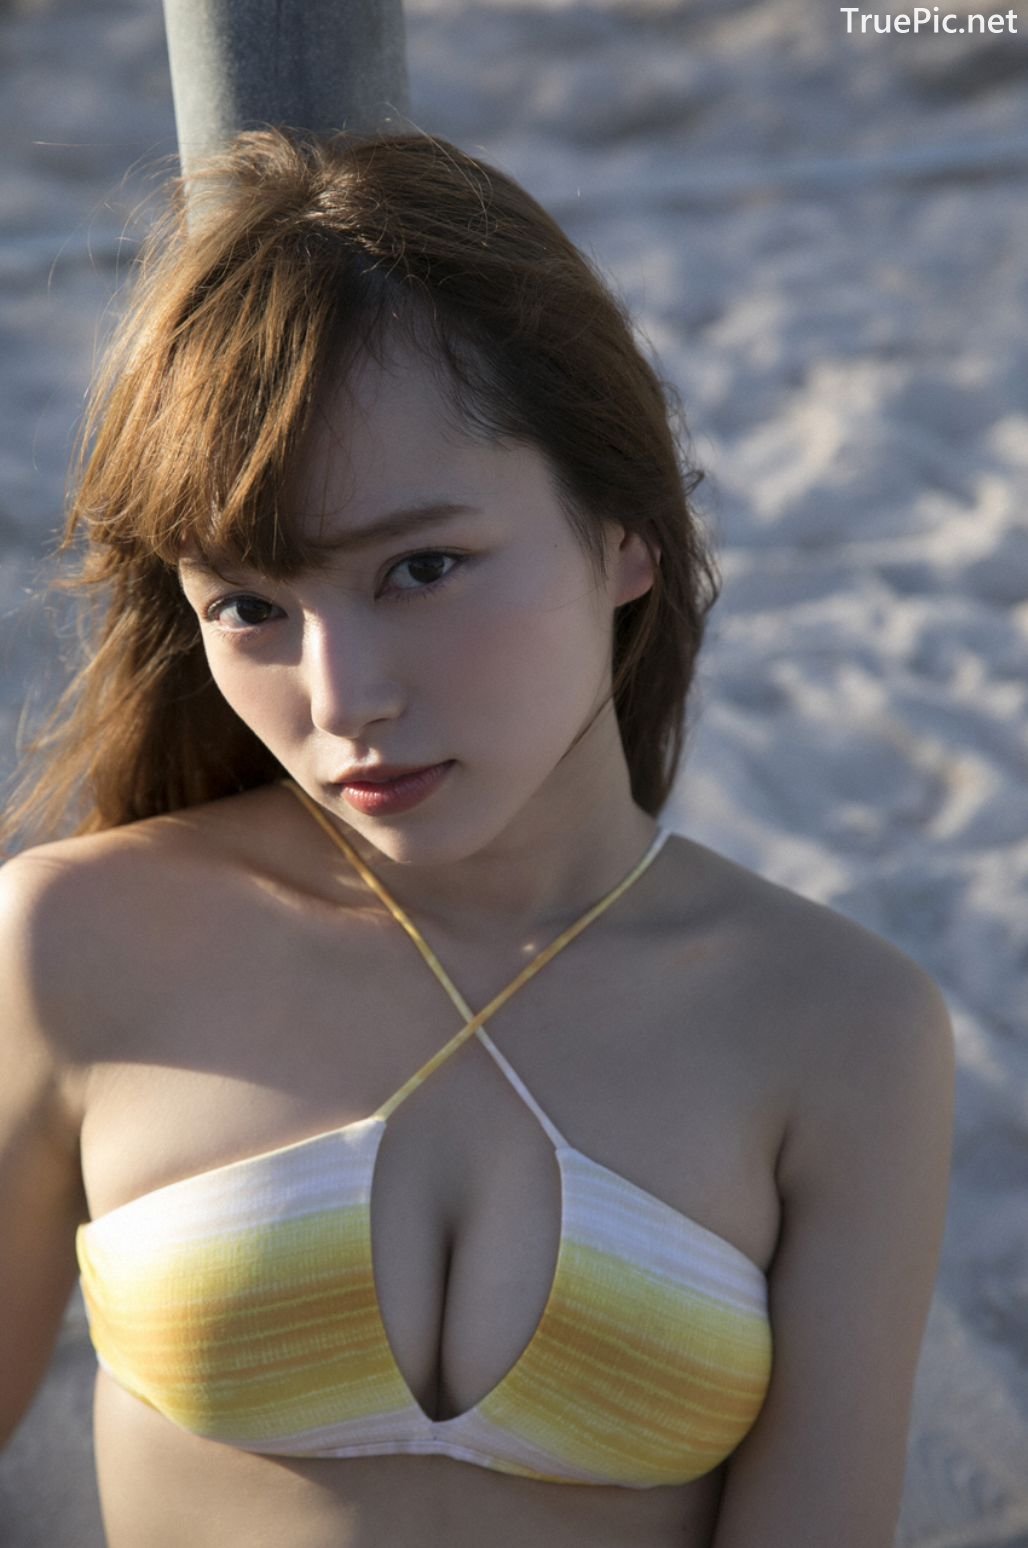 Image-Japanese-Idol-Sayaka-Komuro-Bikini-Show-TruePic.net- Picture-53